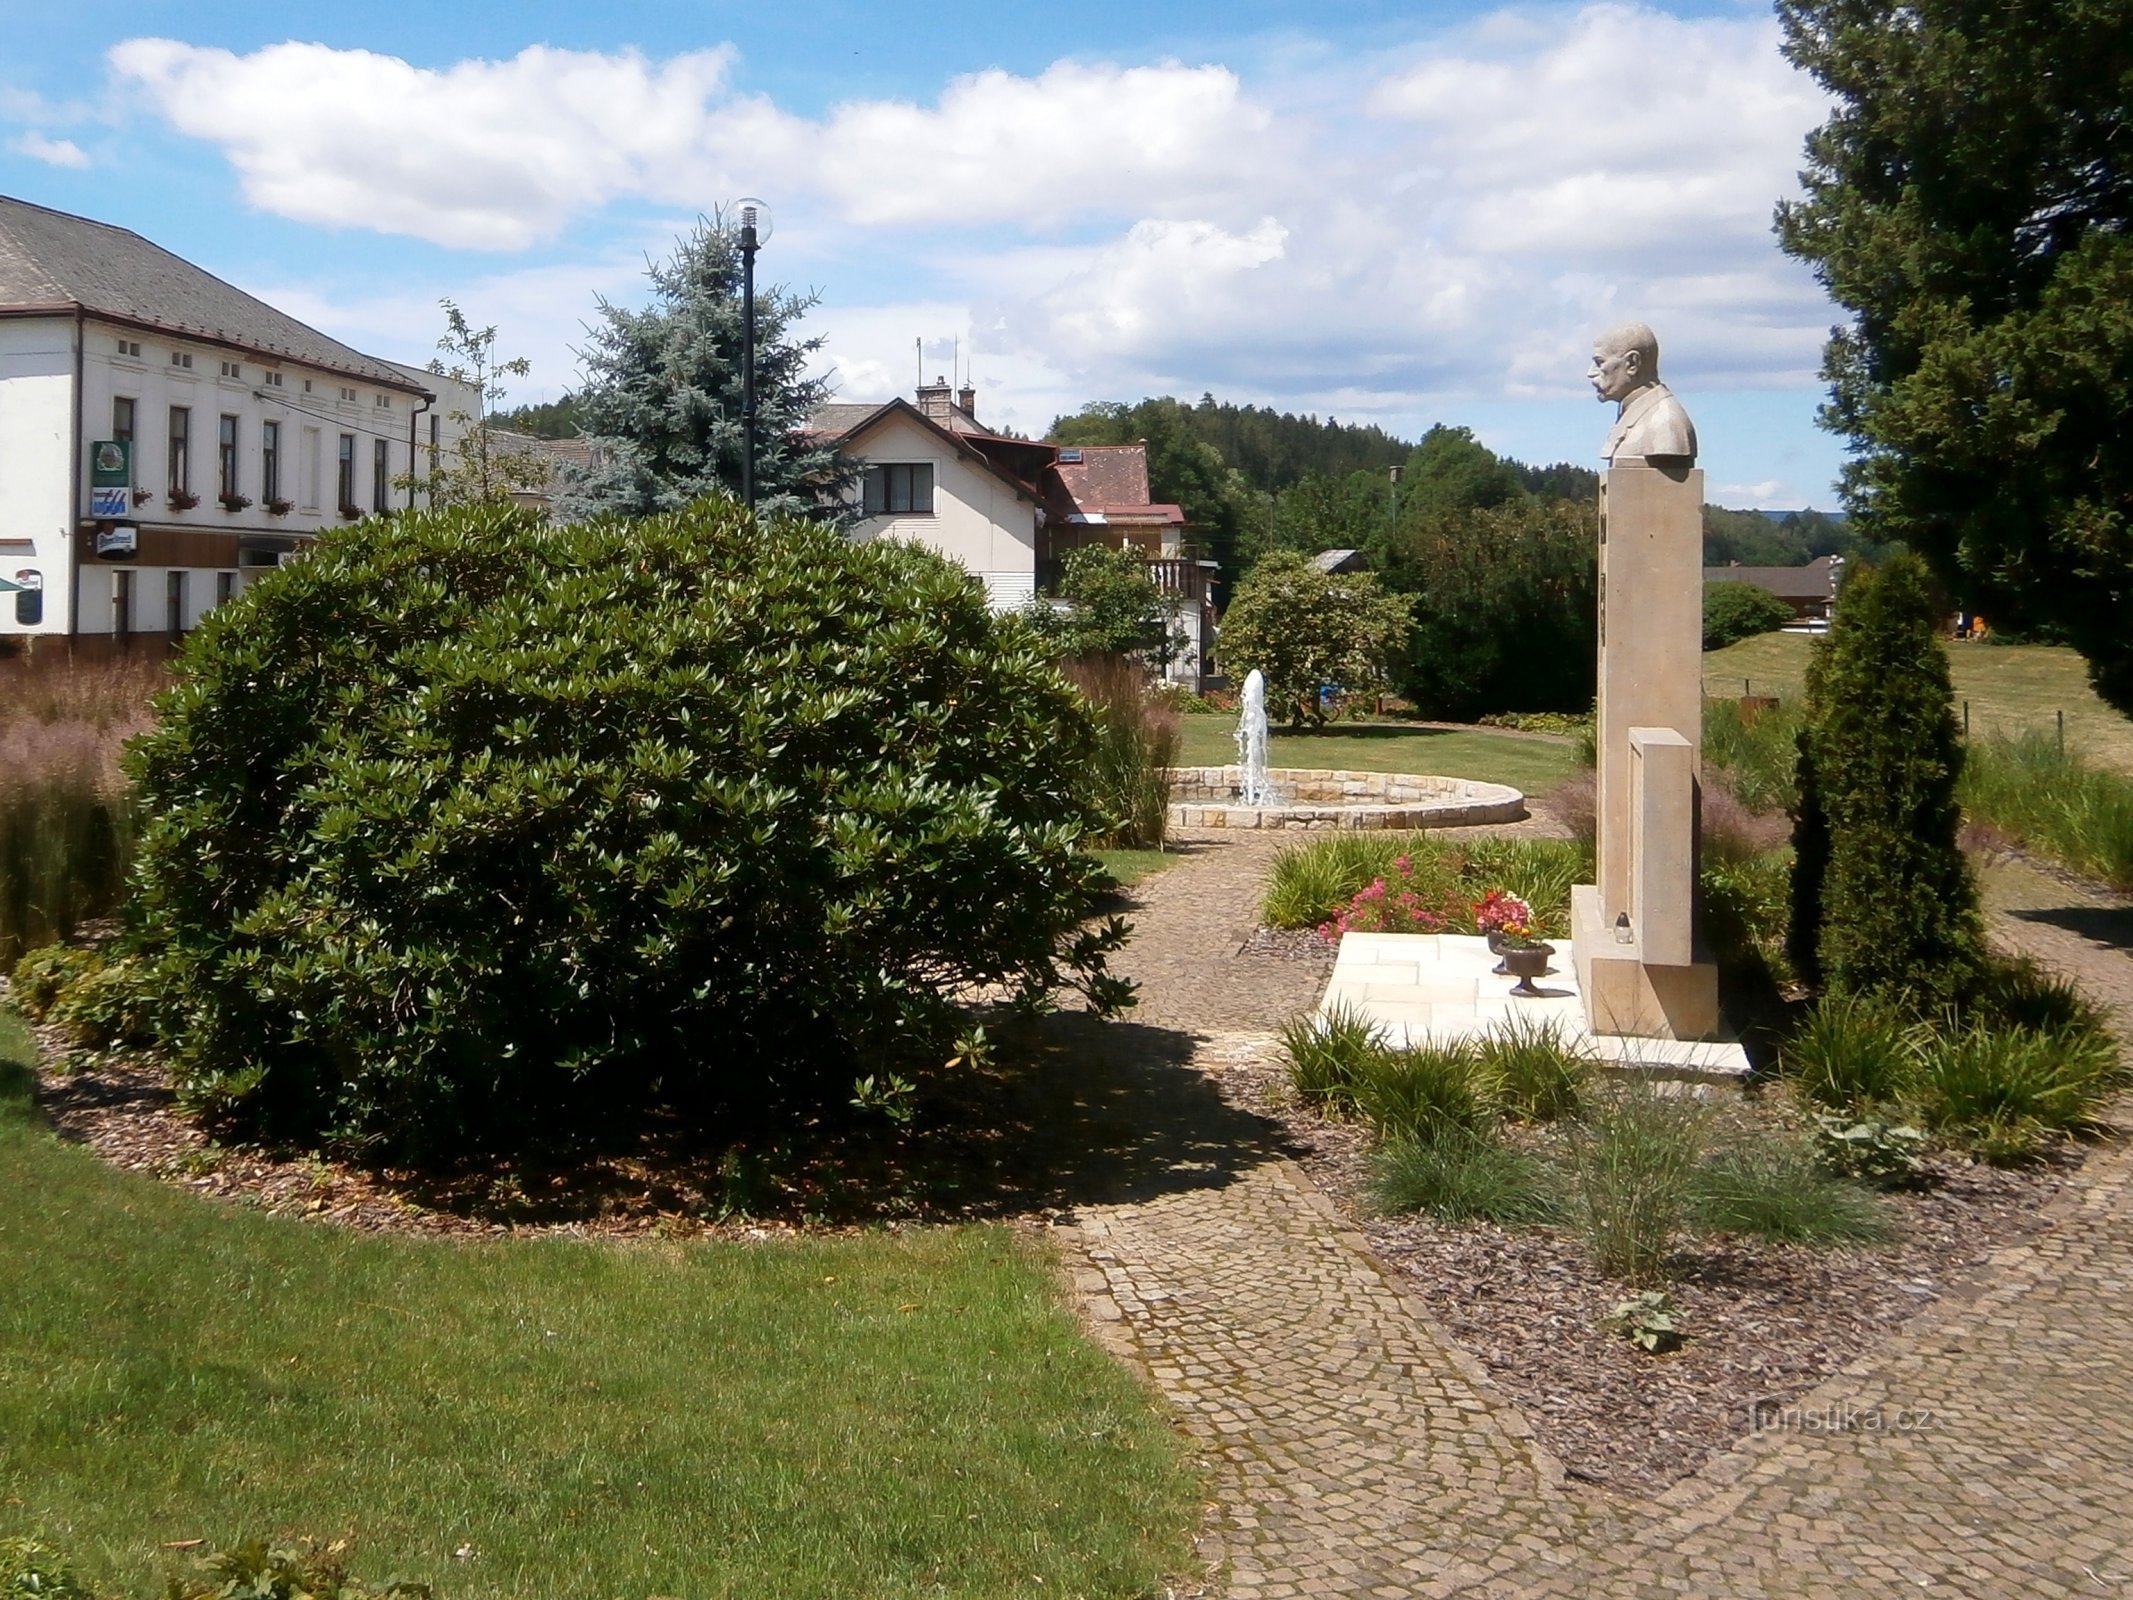 第一次世界大战阵亡将士纪念碑旁的公园 (Havlovice)